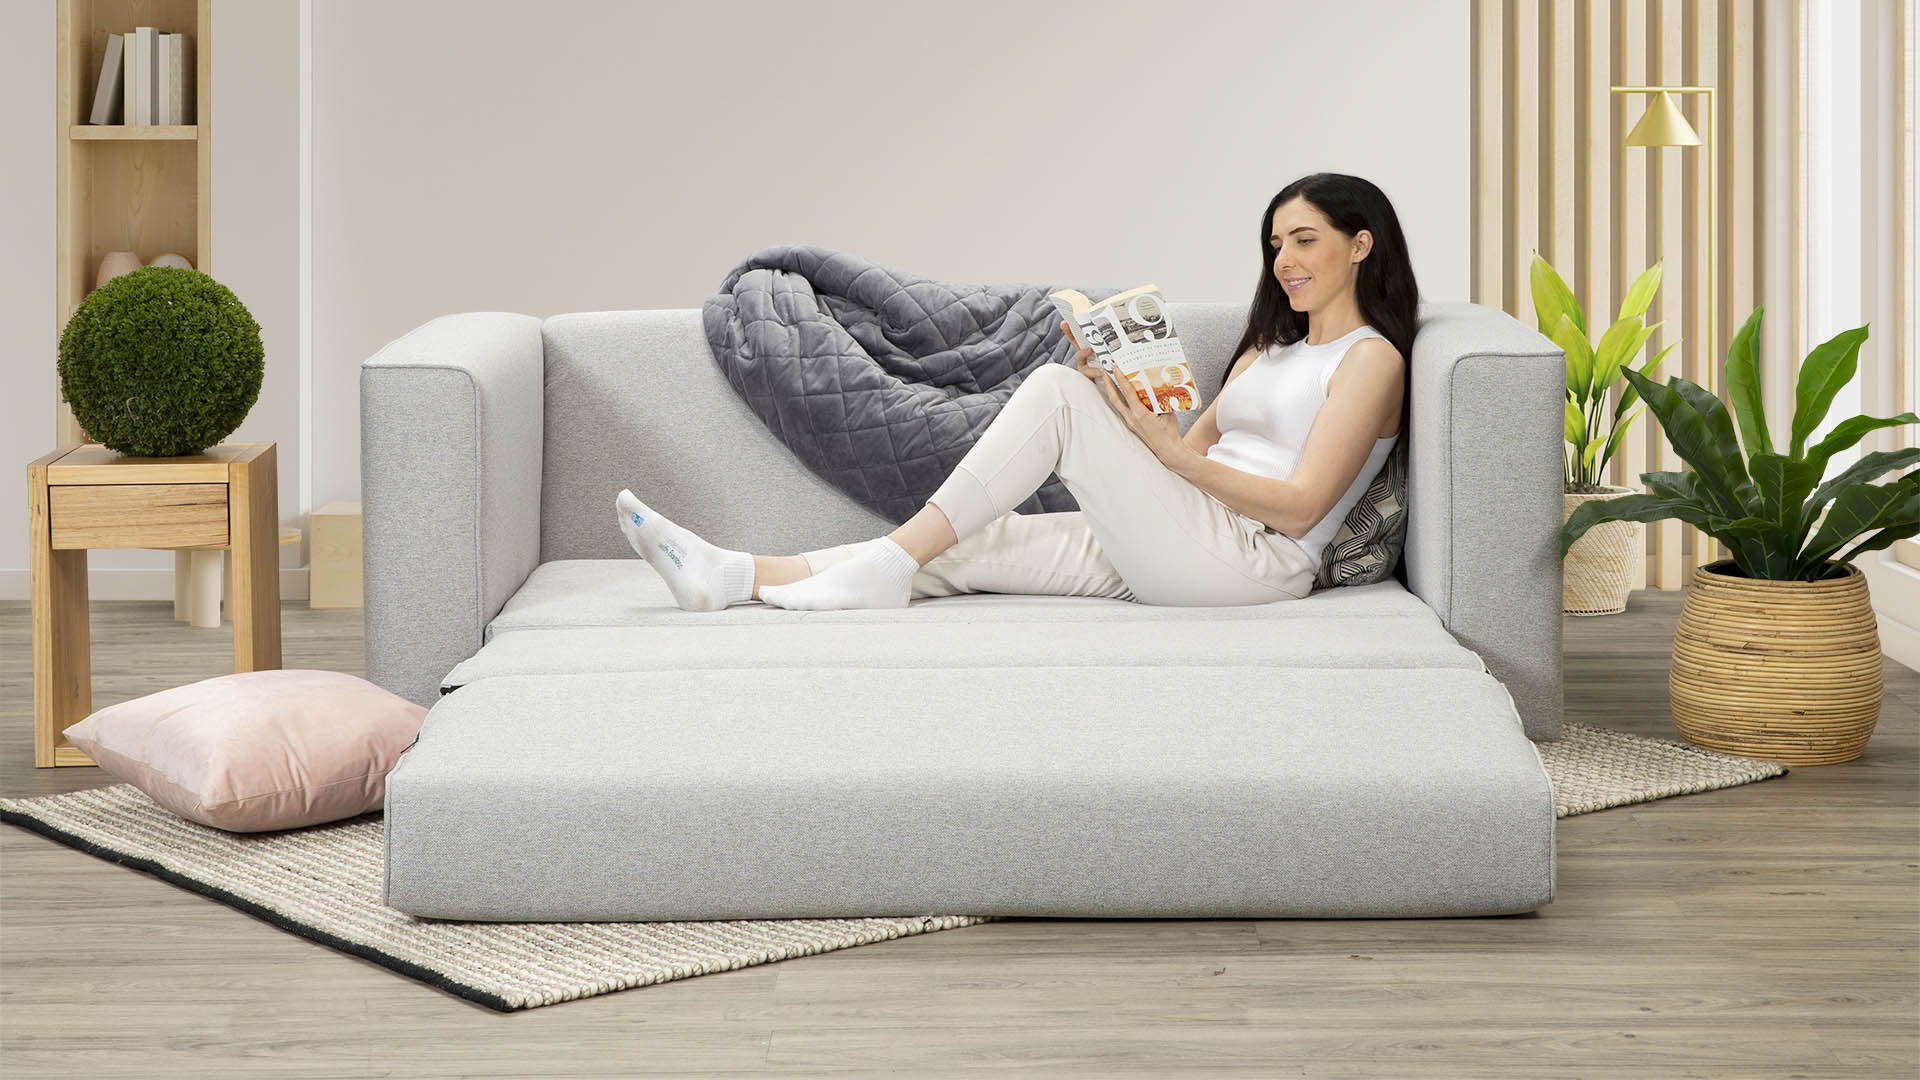 A Zeek model lying on a brand new silver Sofa Bed.